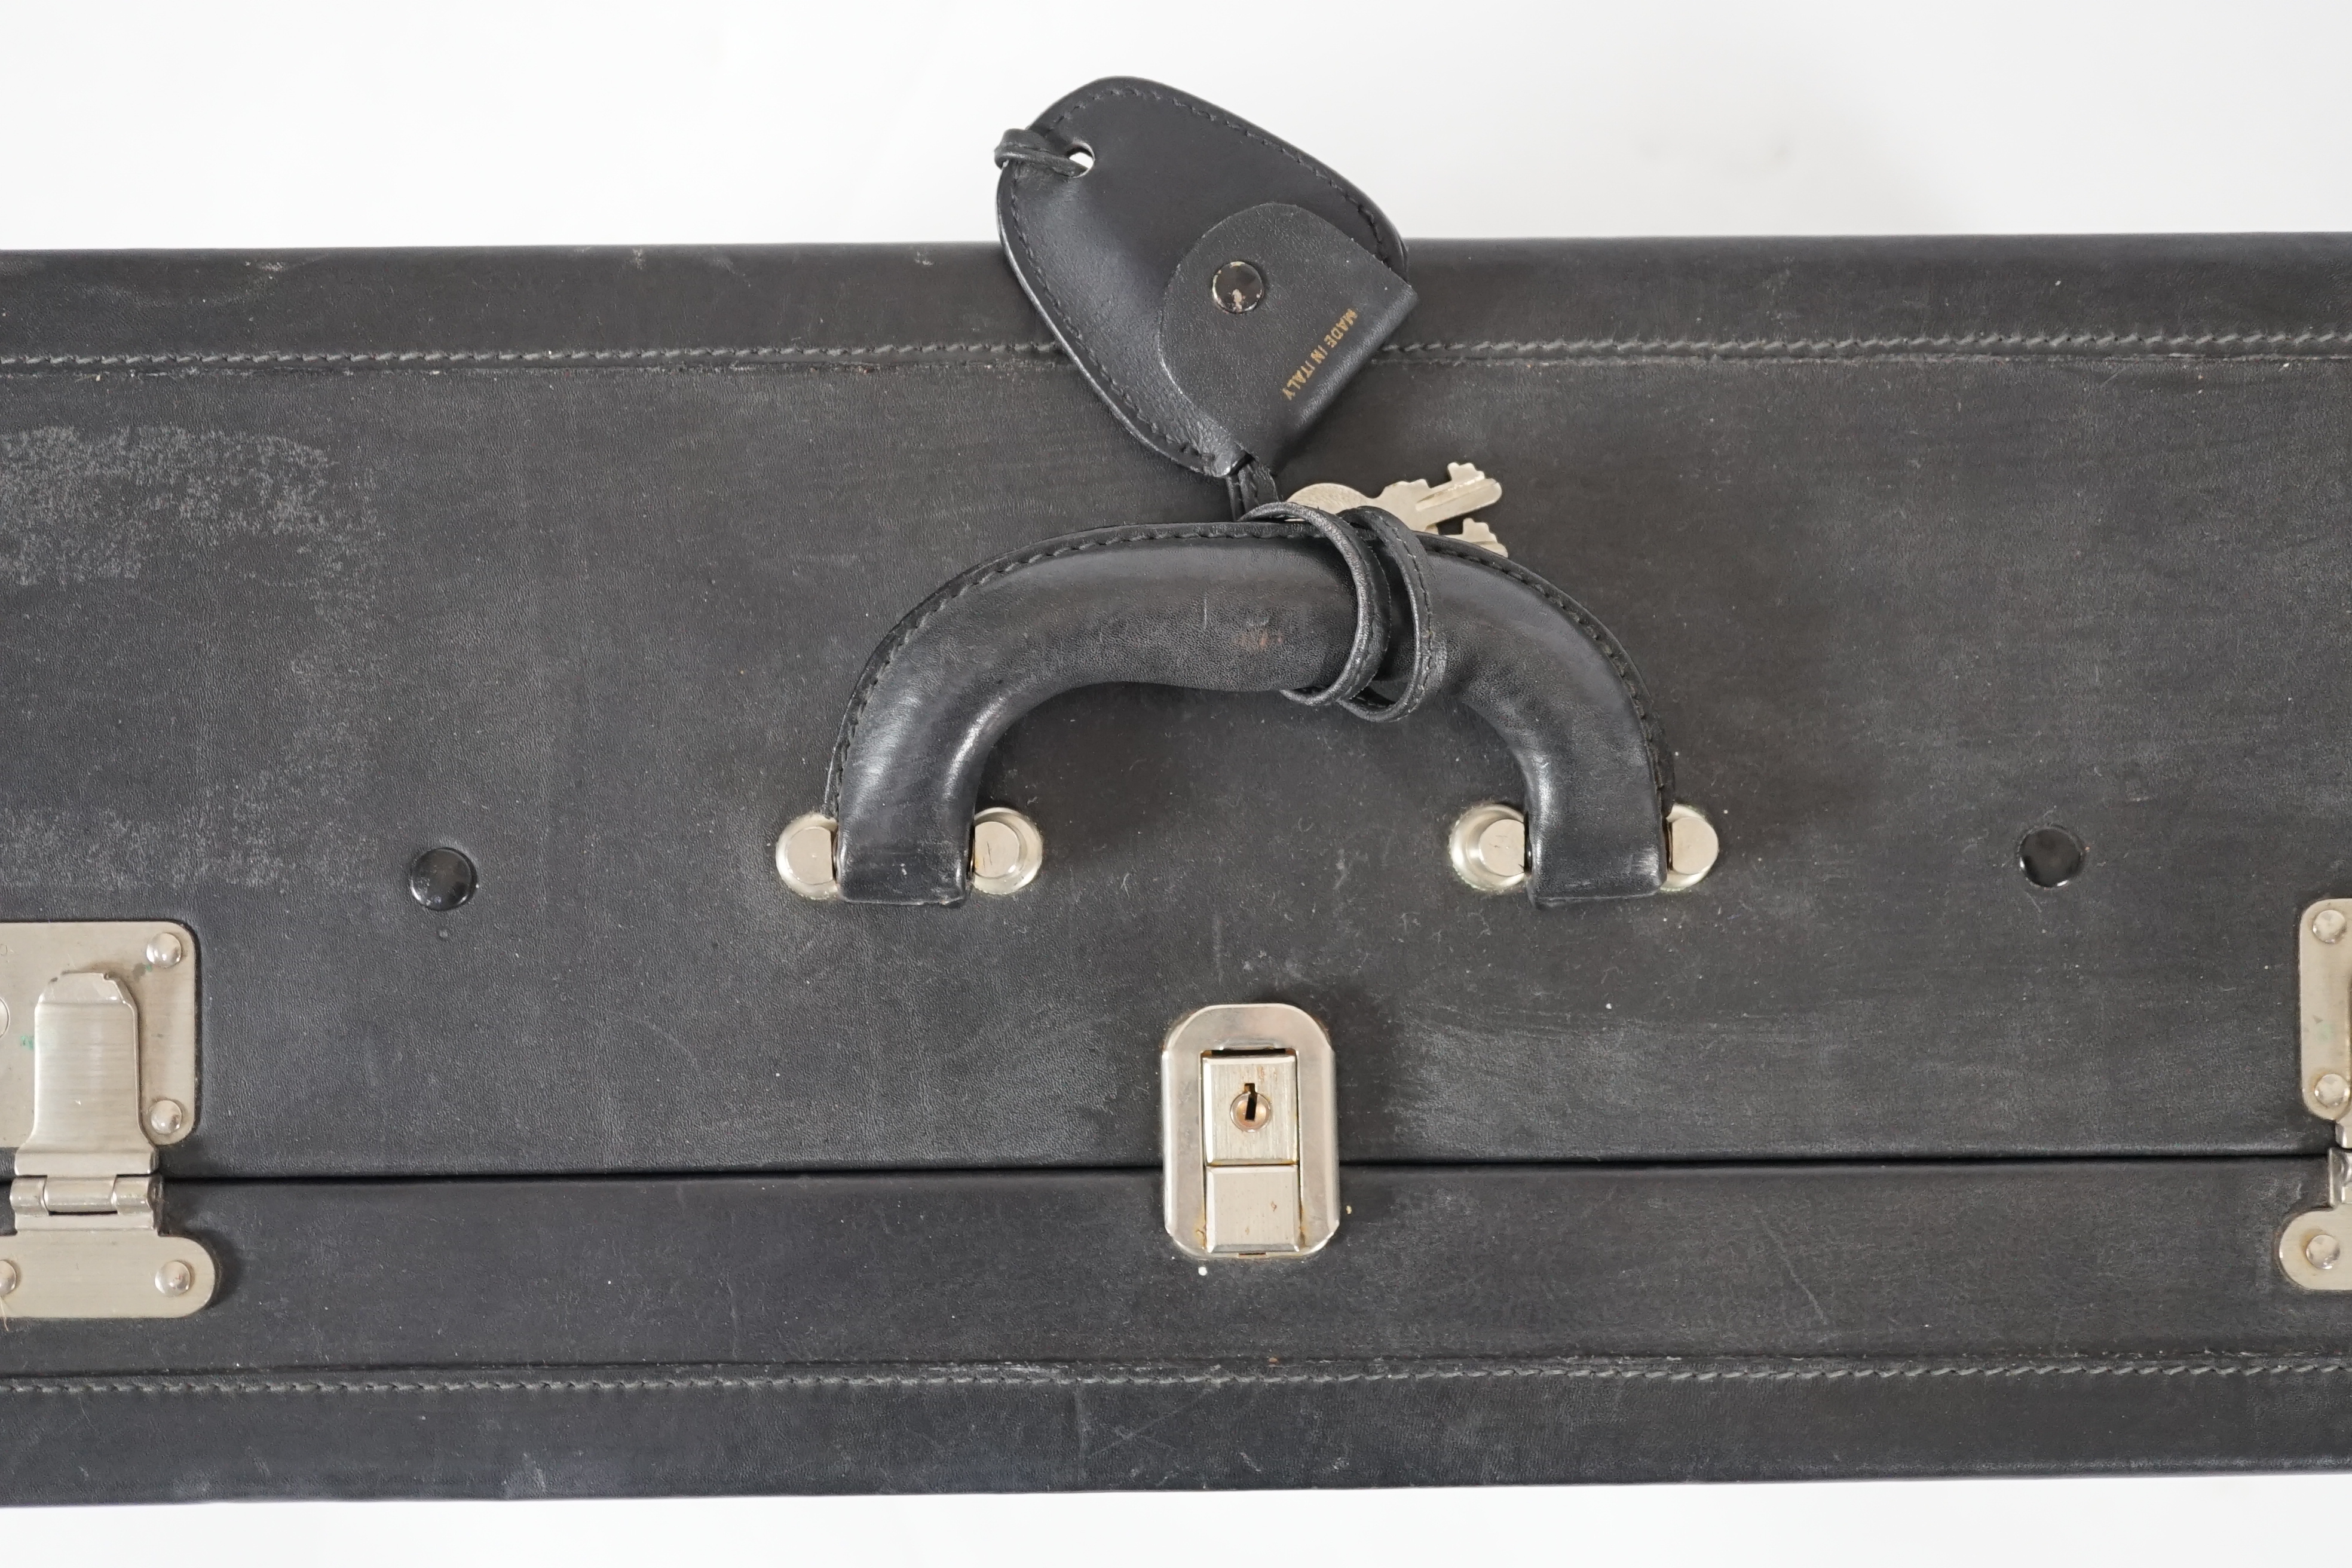 A Nina Cerruti black leather suitcase Length 64.5cm, depth 22cm, width 42cm